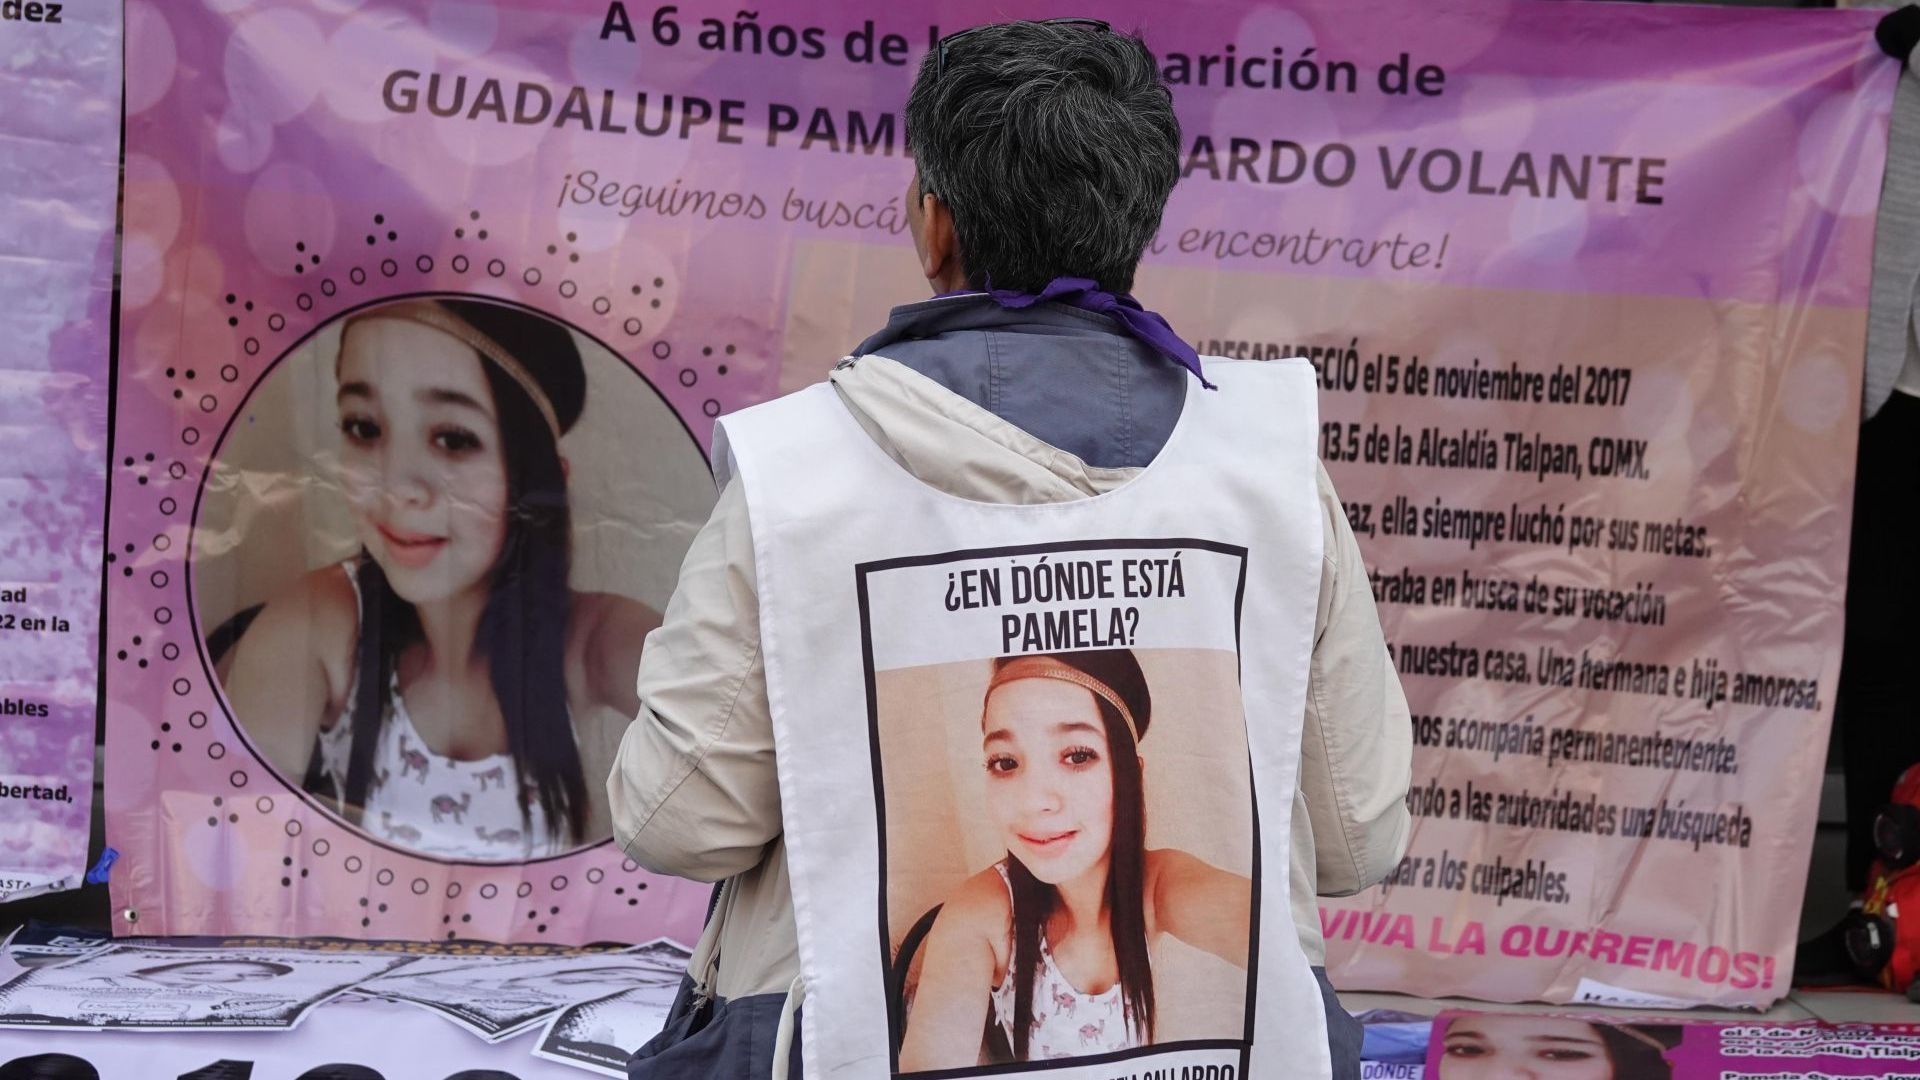 Pamela Gallardo Volante desapareció el 5 de noviembre de 2017 en el Ajusco en la CDMX y pese a las búsquedas no se tiene rastro de ella